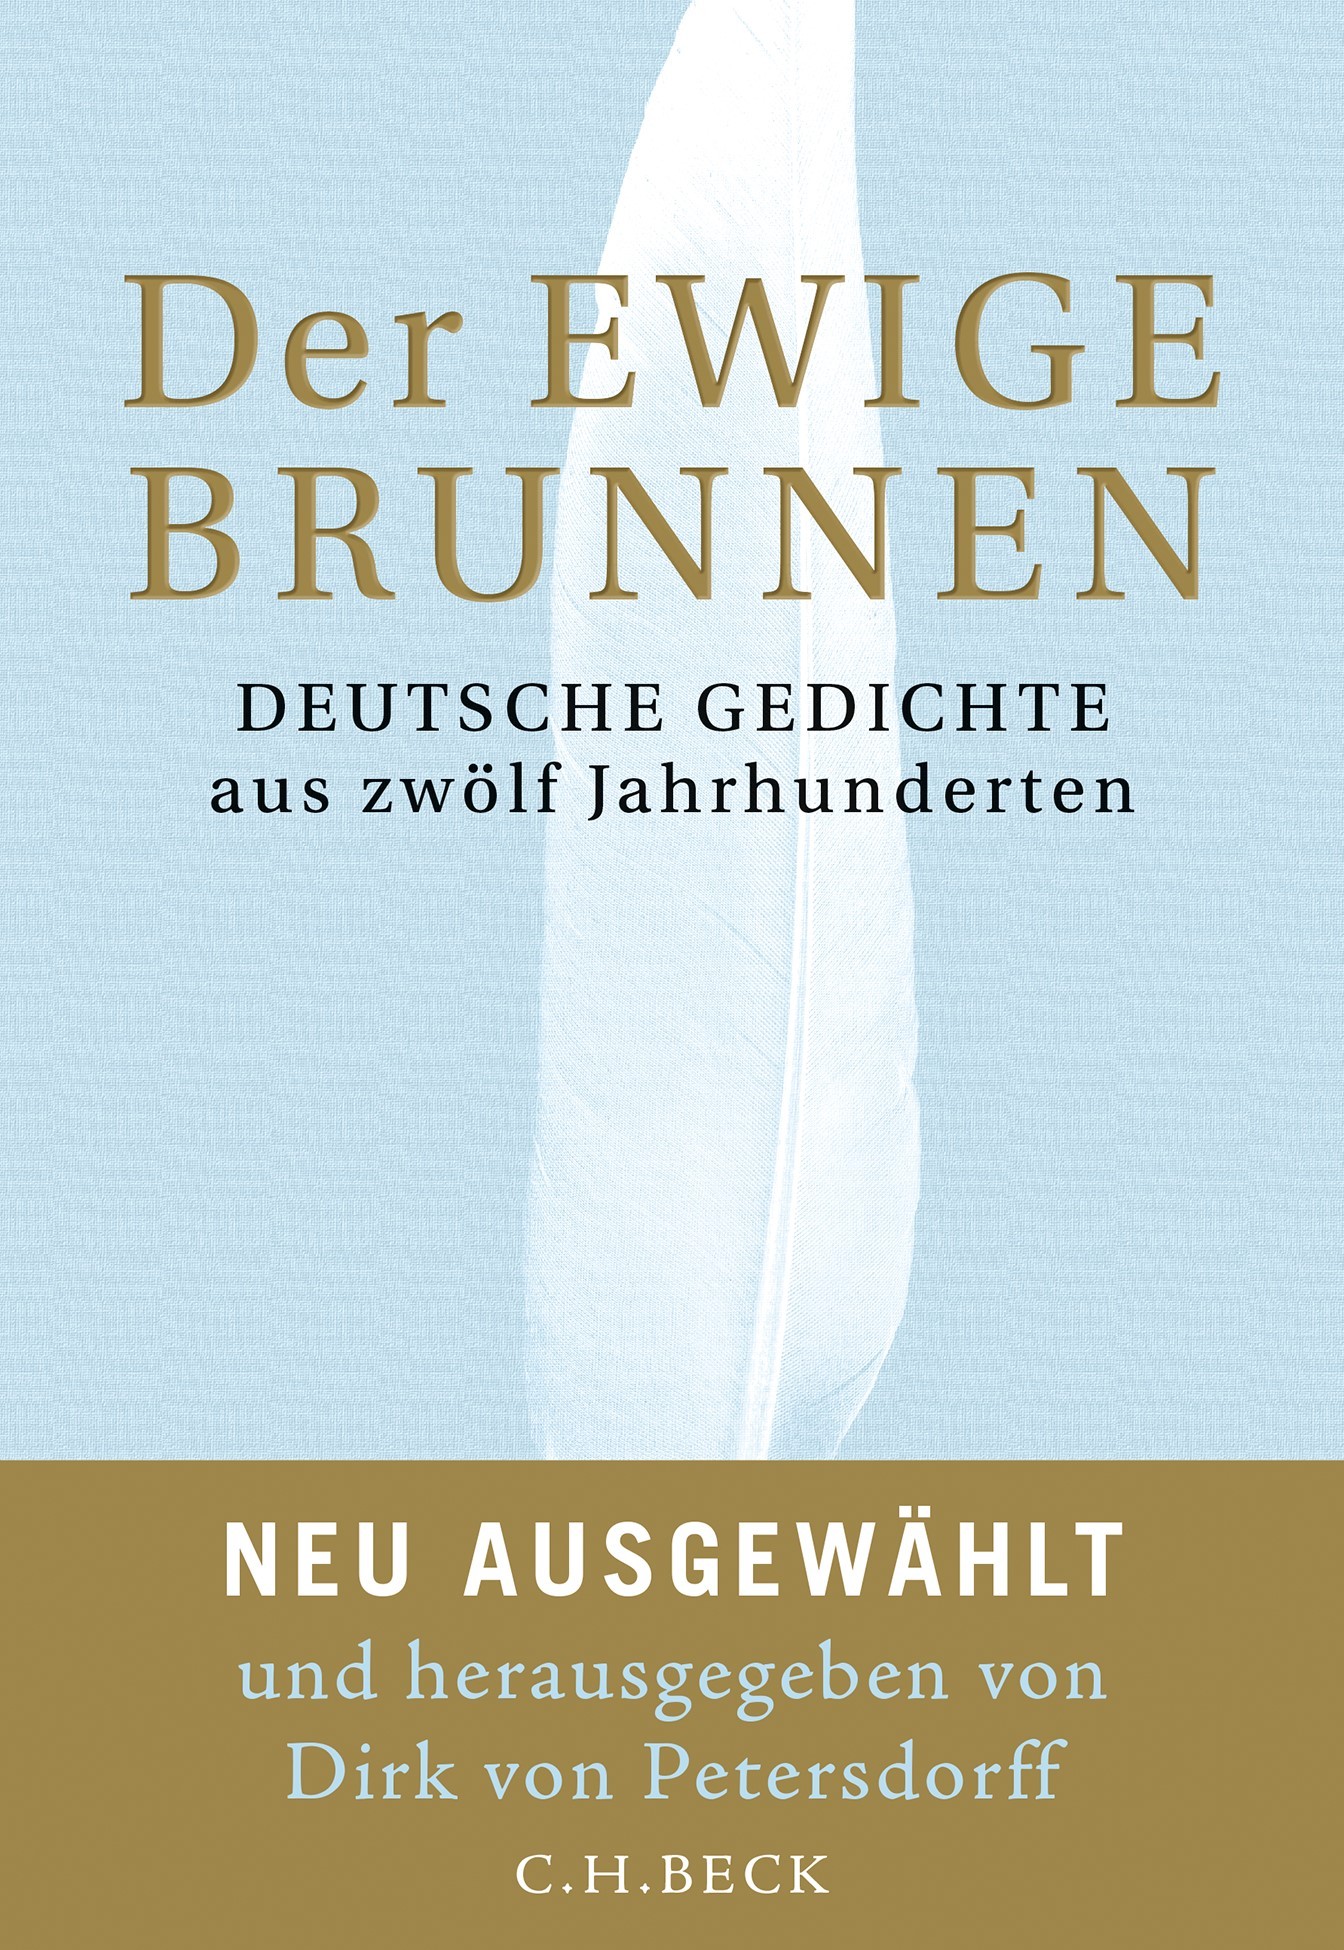 Rezension/Buchkritik "Der ewige Brunnen", Dirk von Petersdorff (Hrsg.),Verlag C. H. Beck. Umfassende, inspirierende Reise durch die deutsche Lyrik